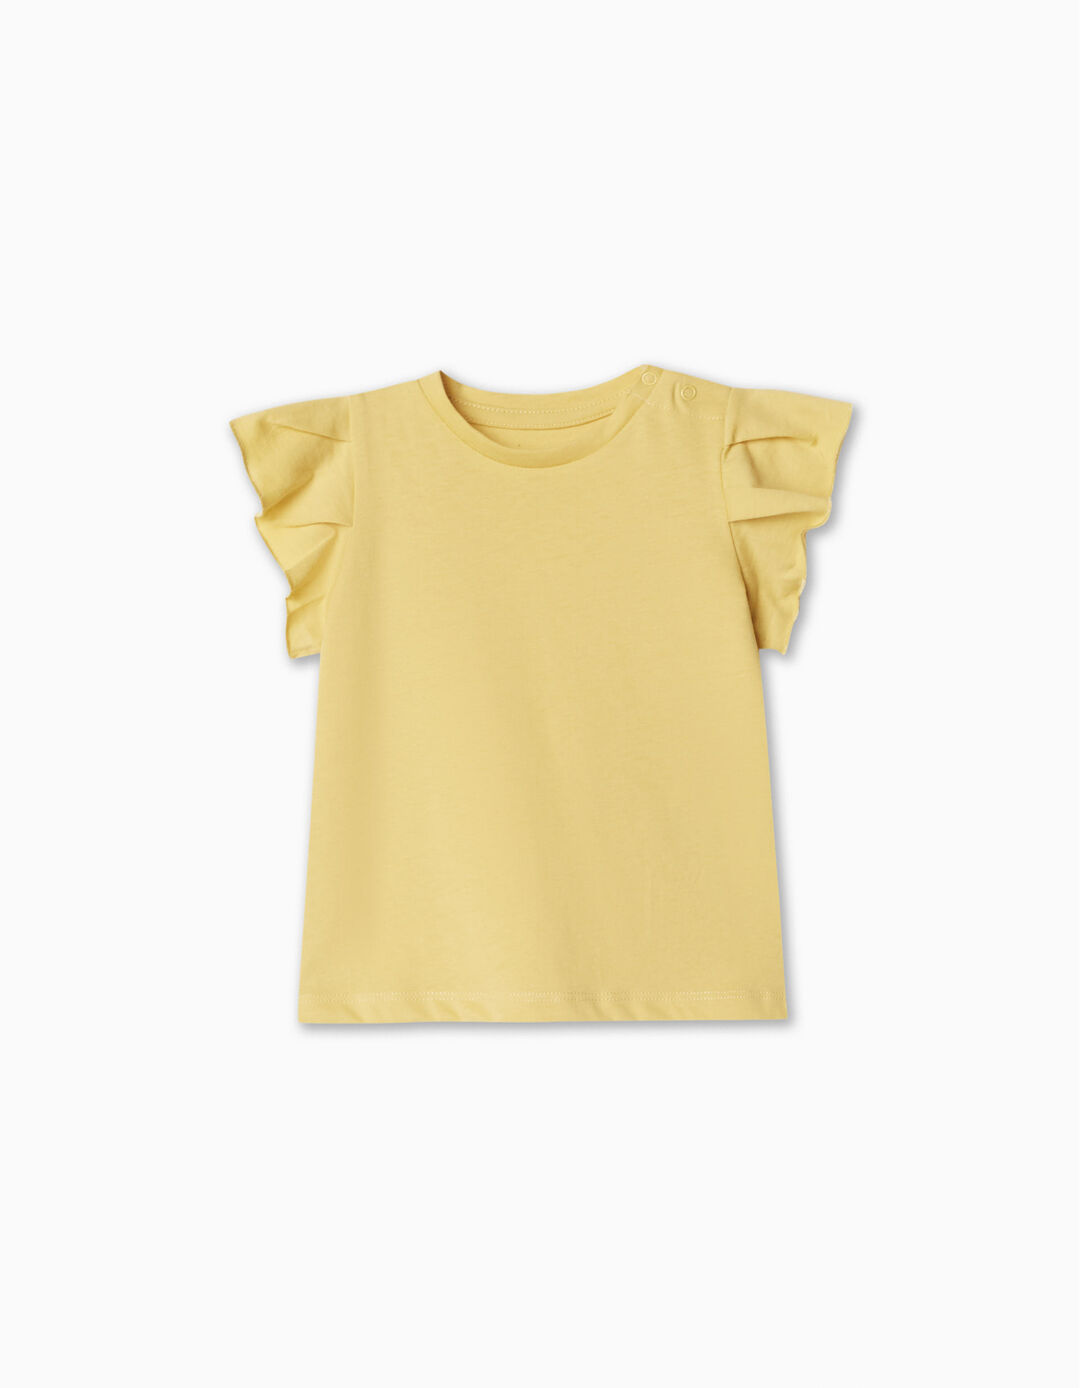 T-shirt Folhos, Bebé Menina, Amarelo Claro